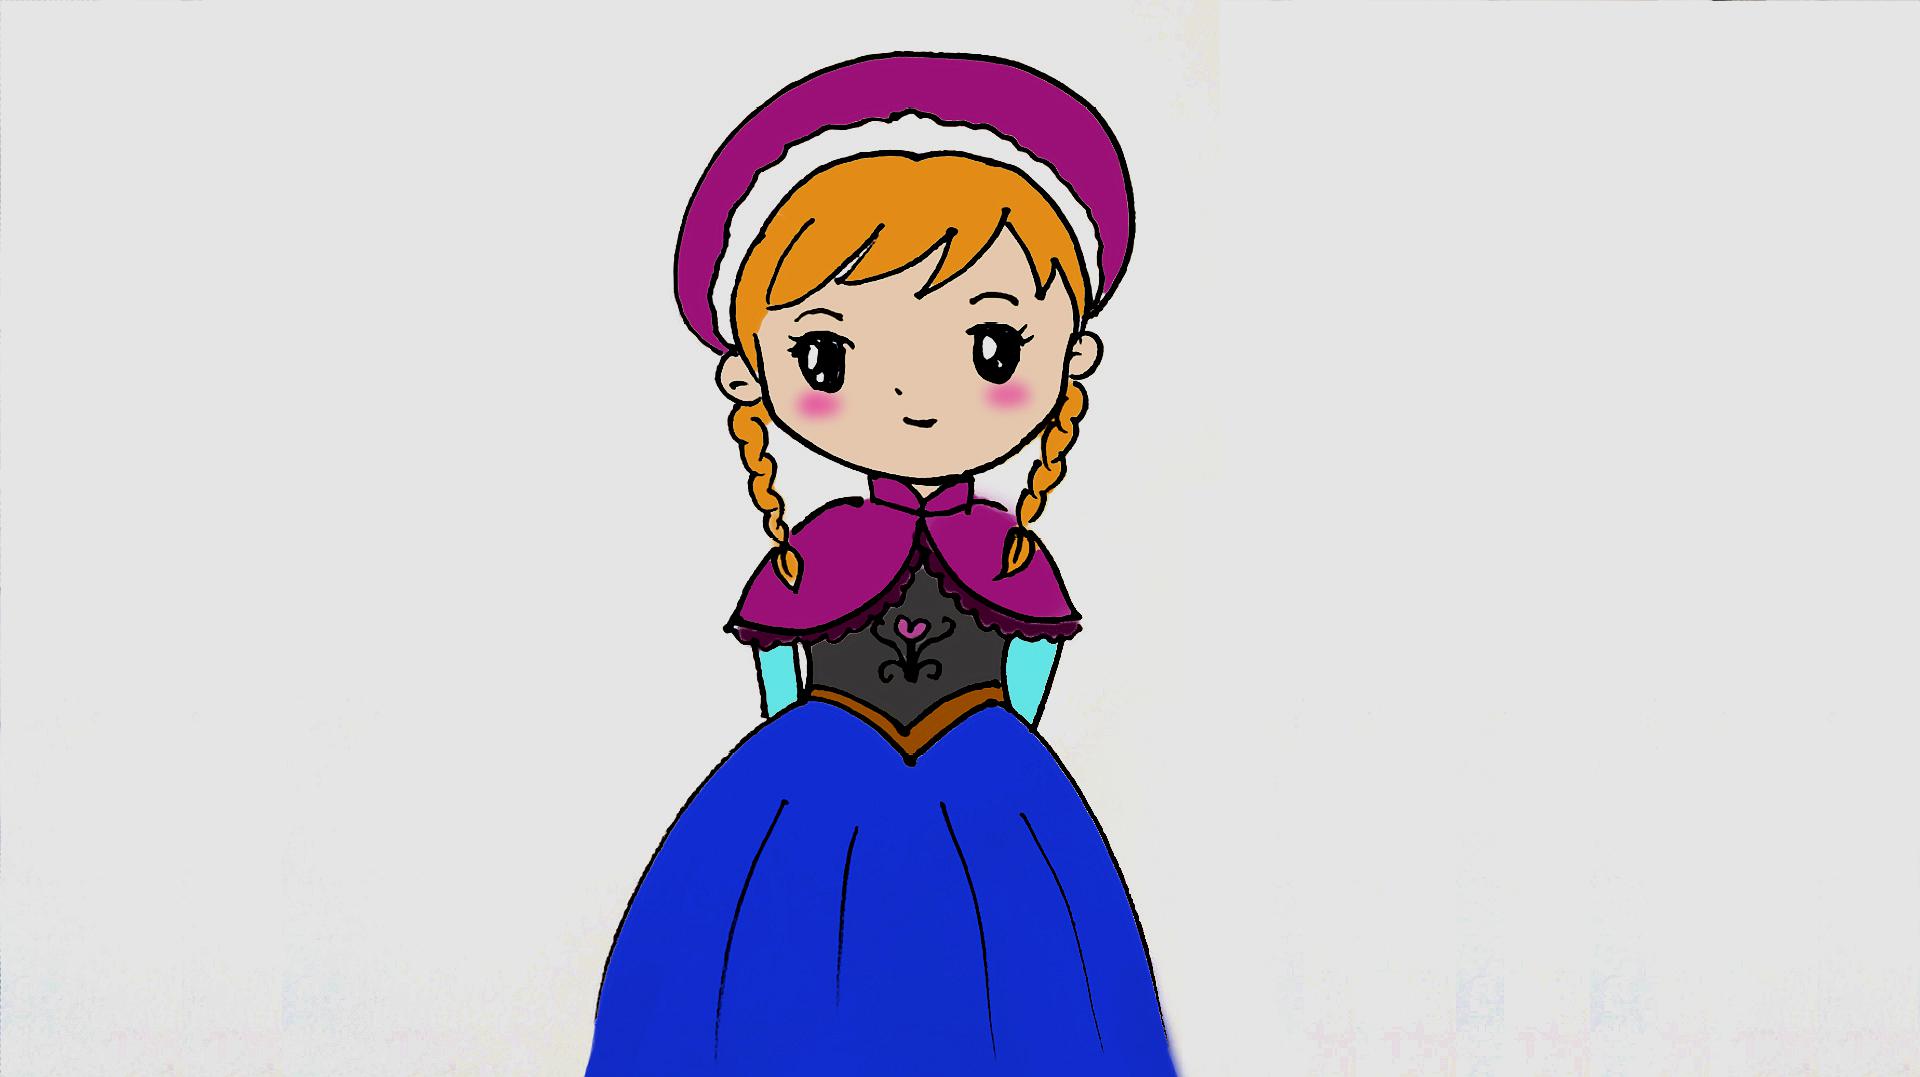 3卡通小公主简笔画  02:04  来源:好看视频-小公主这样画,漂亮又可爱